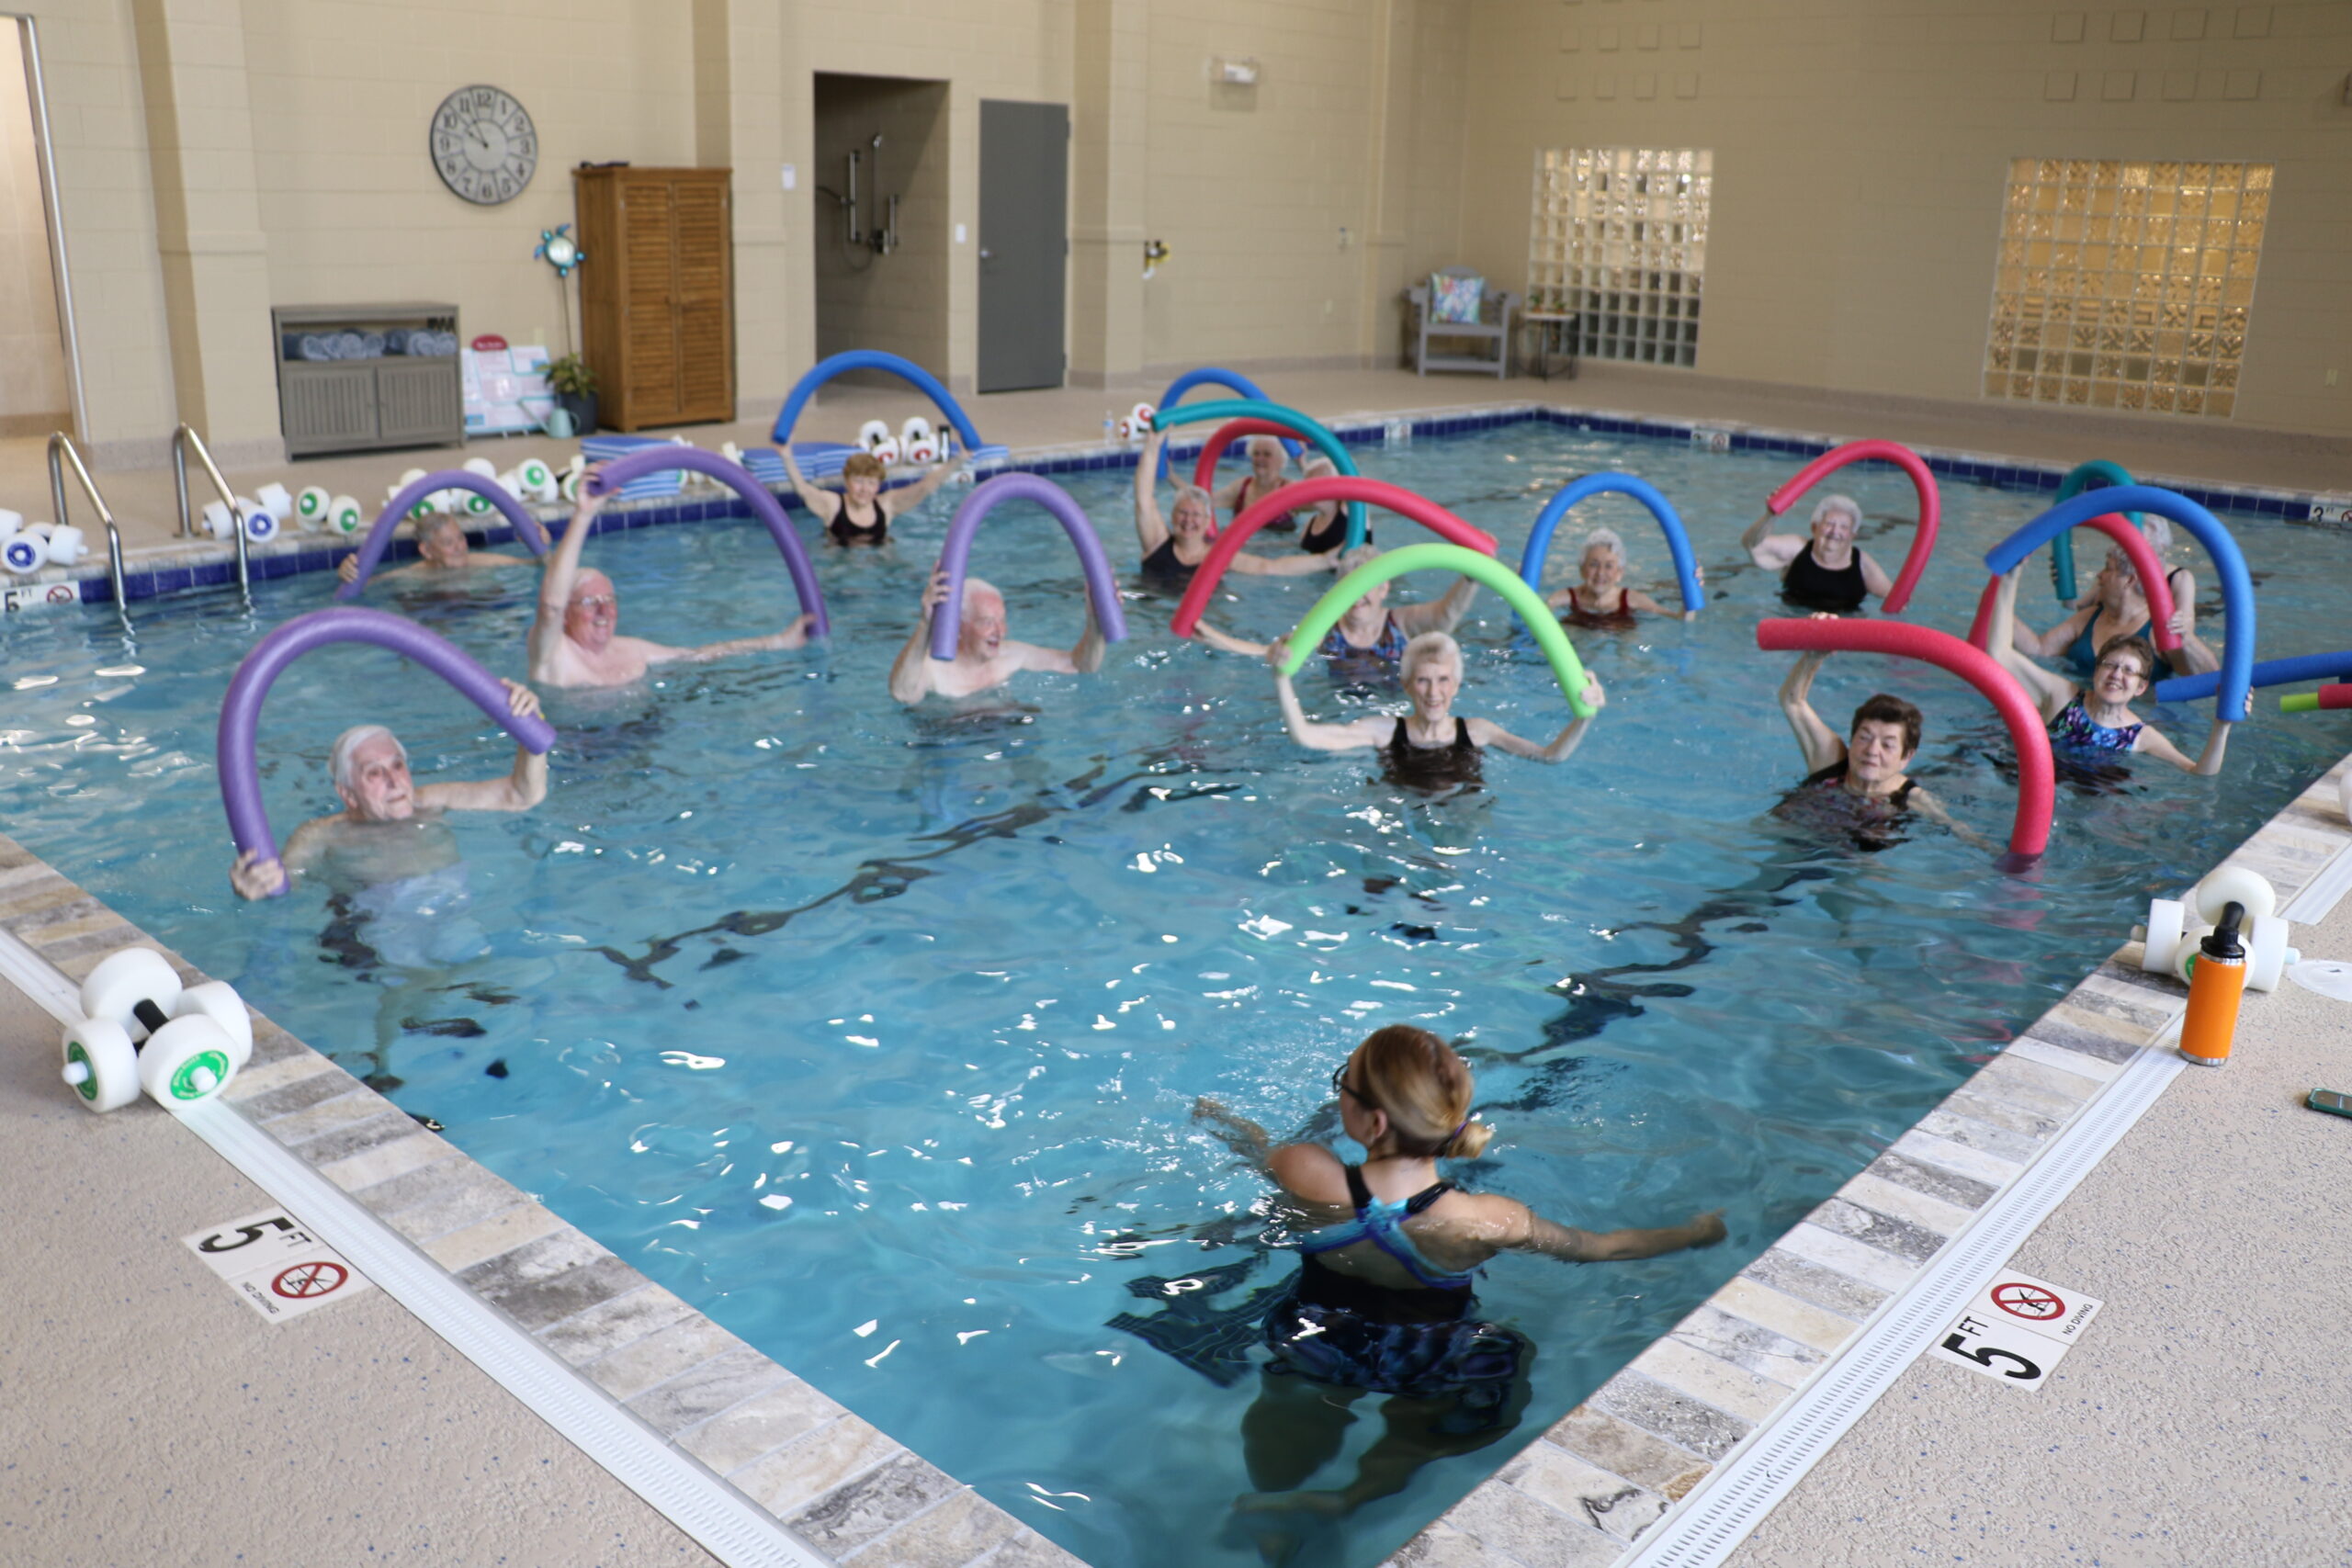 Seniors participating in aqua aerobics class